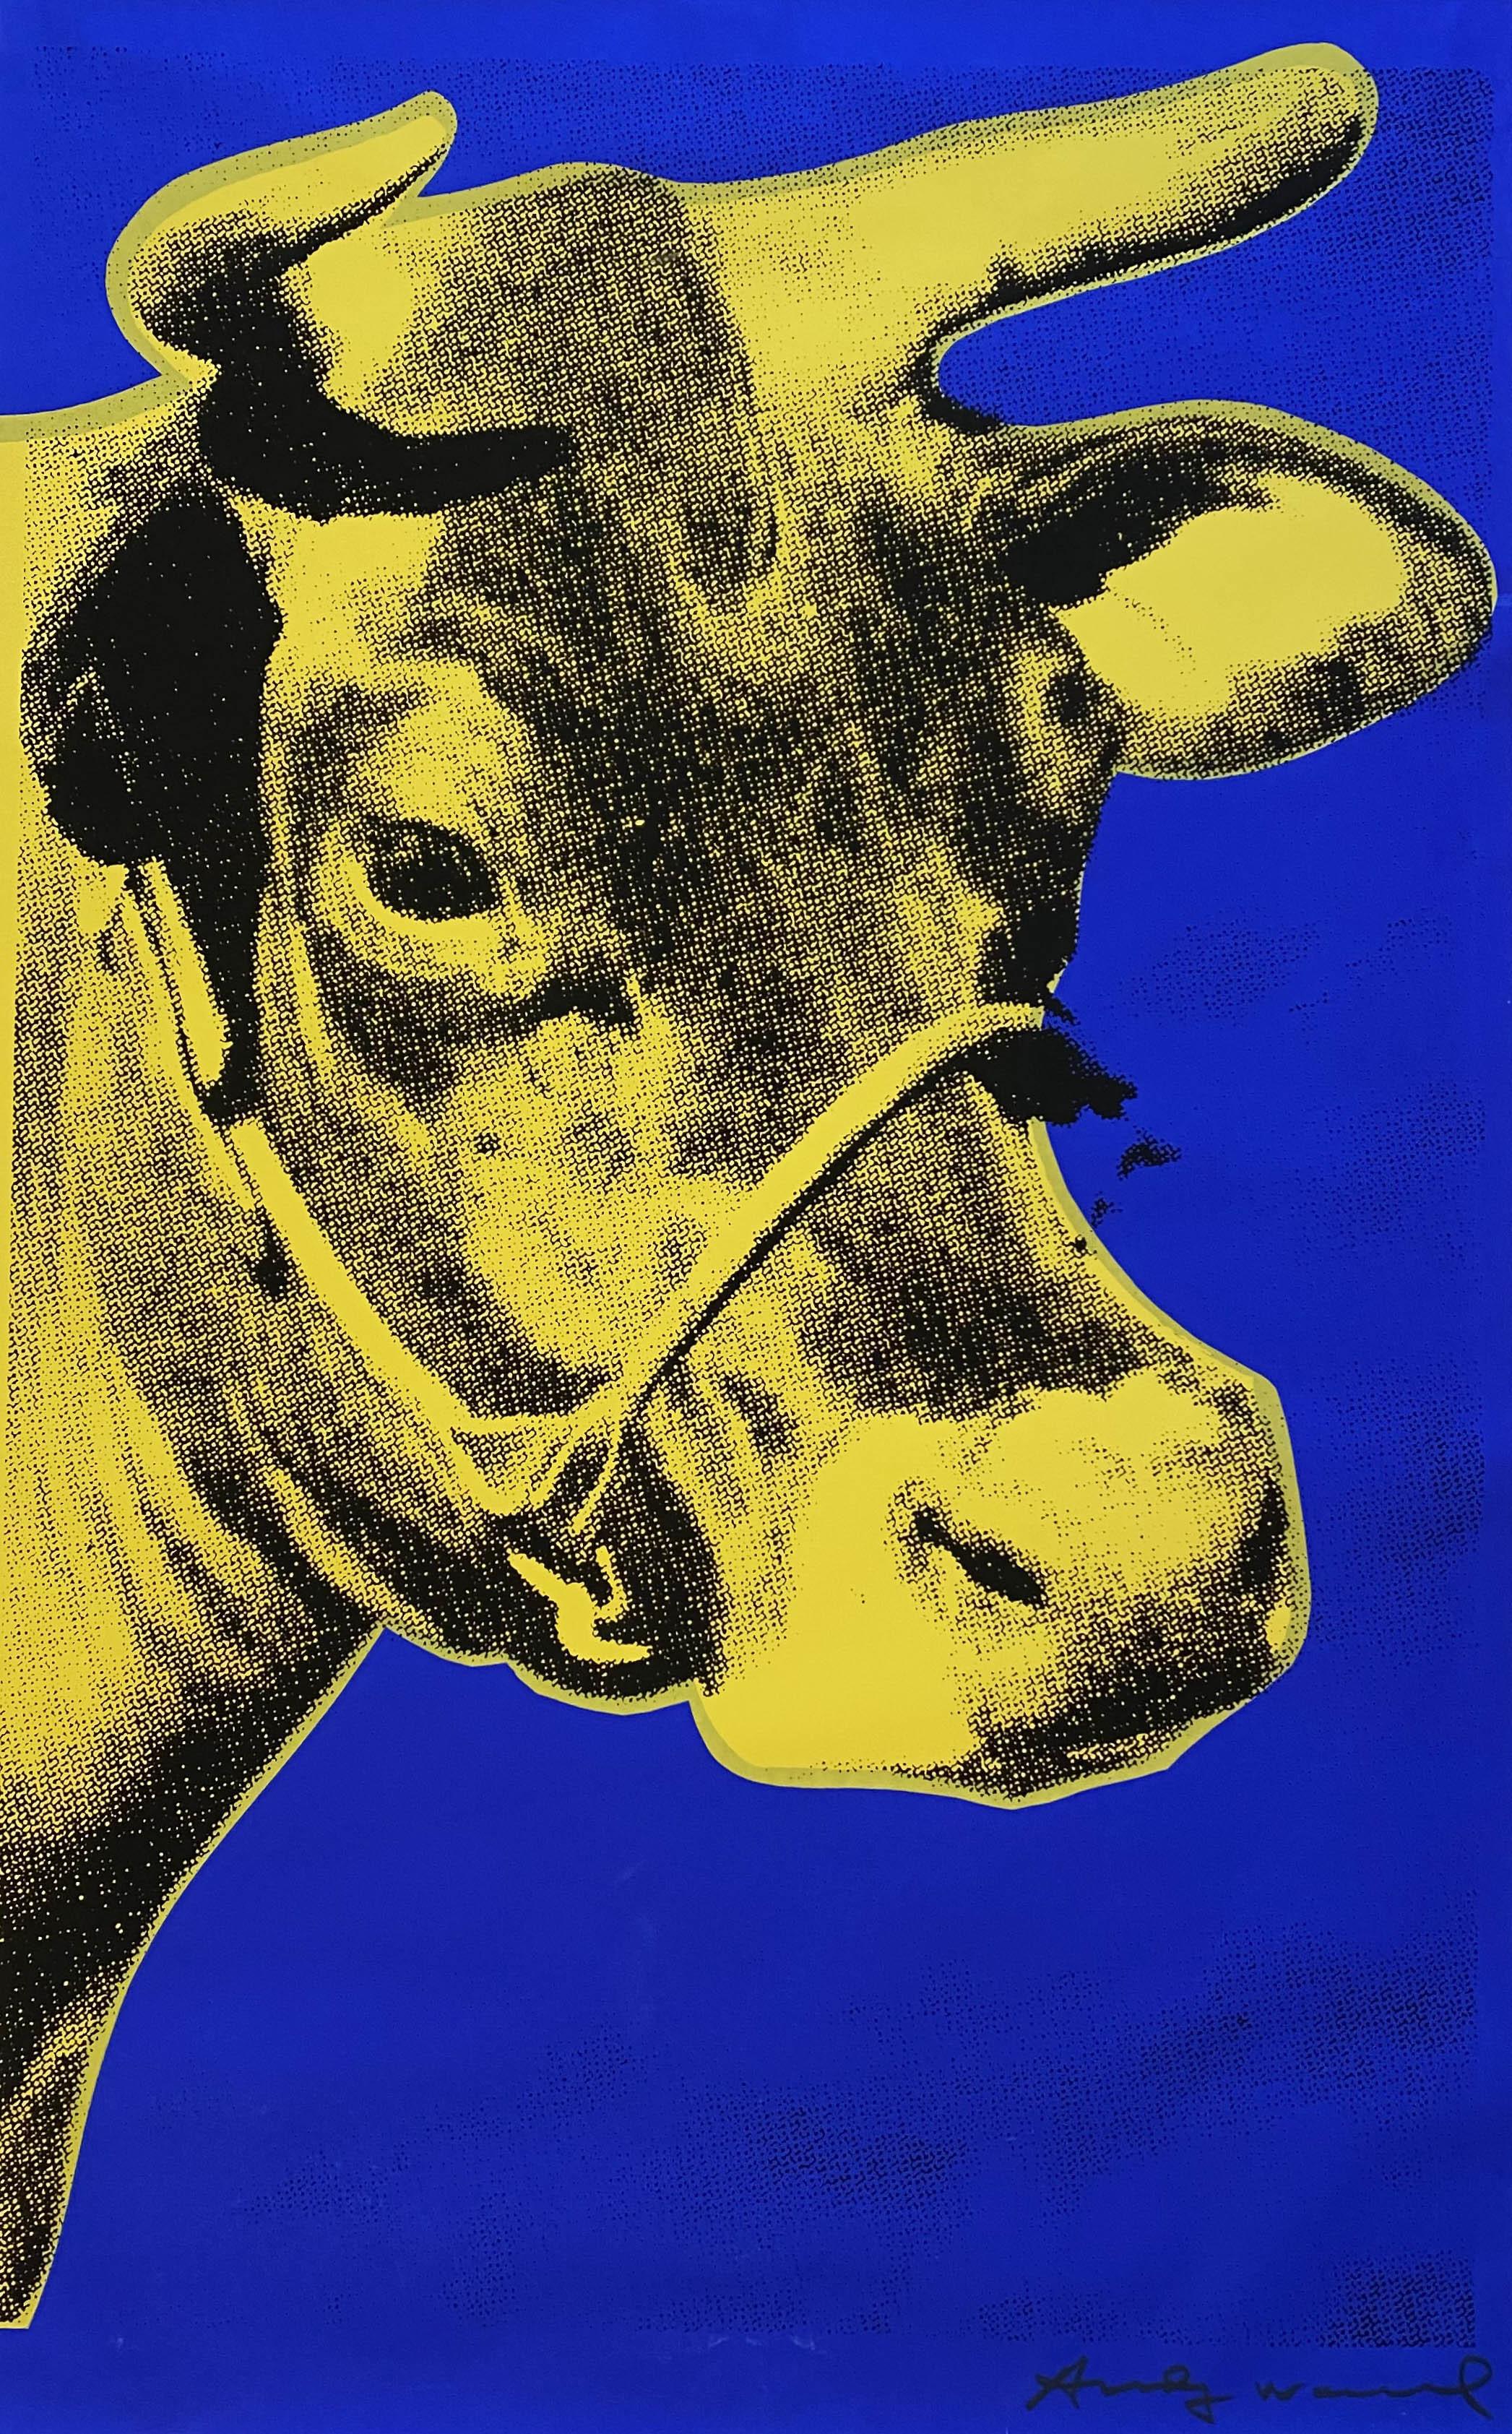 Andy Warhol Animal Print - Cow 1971